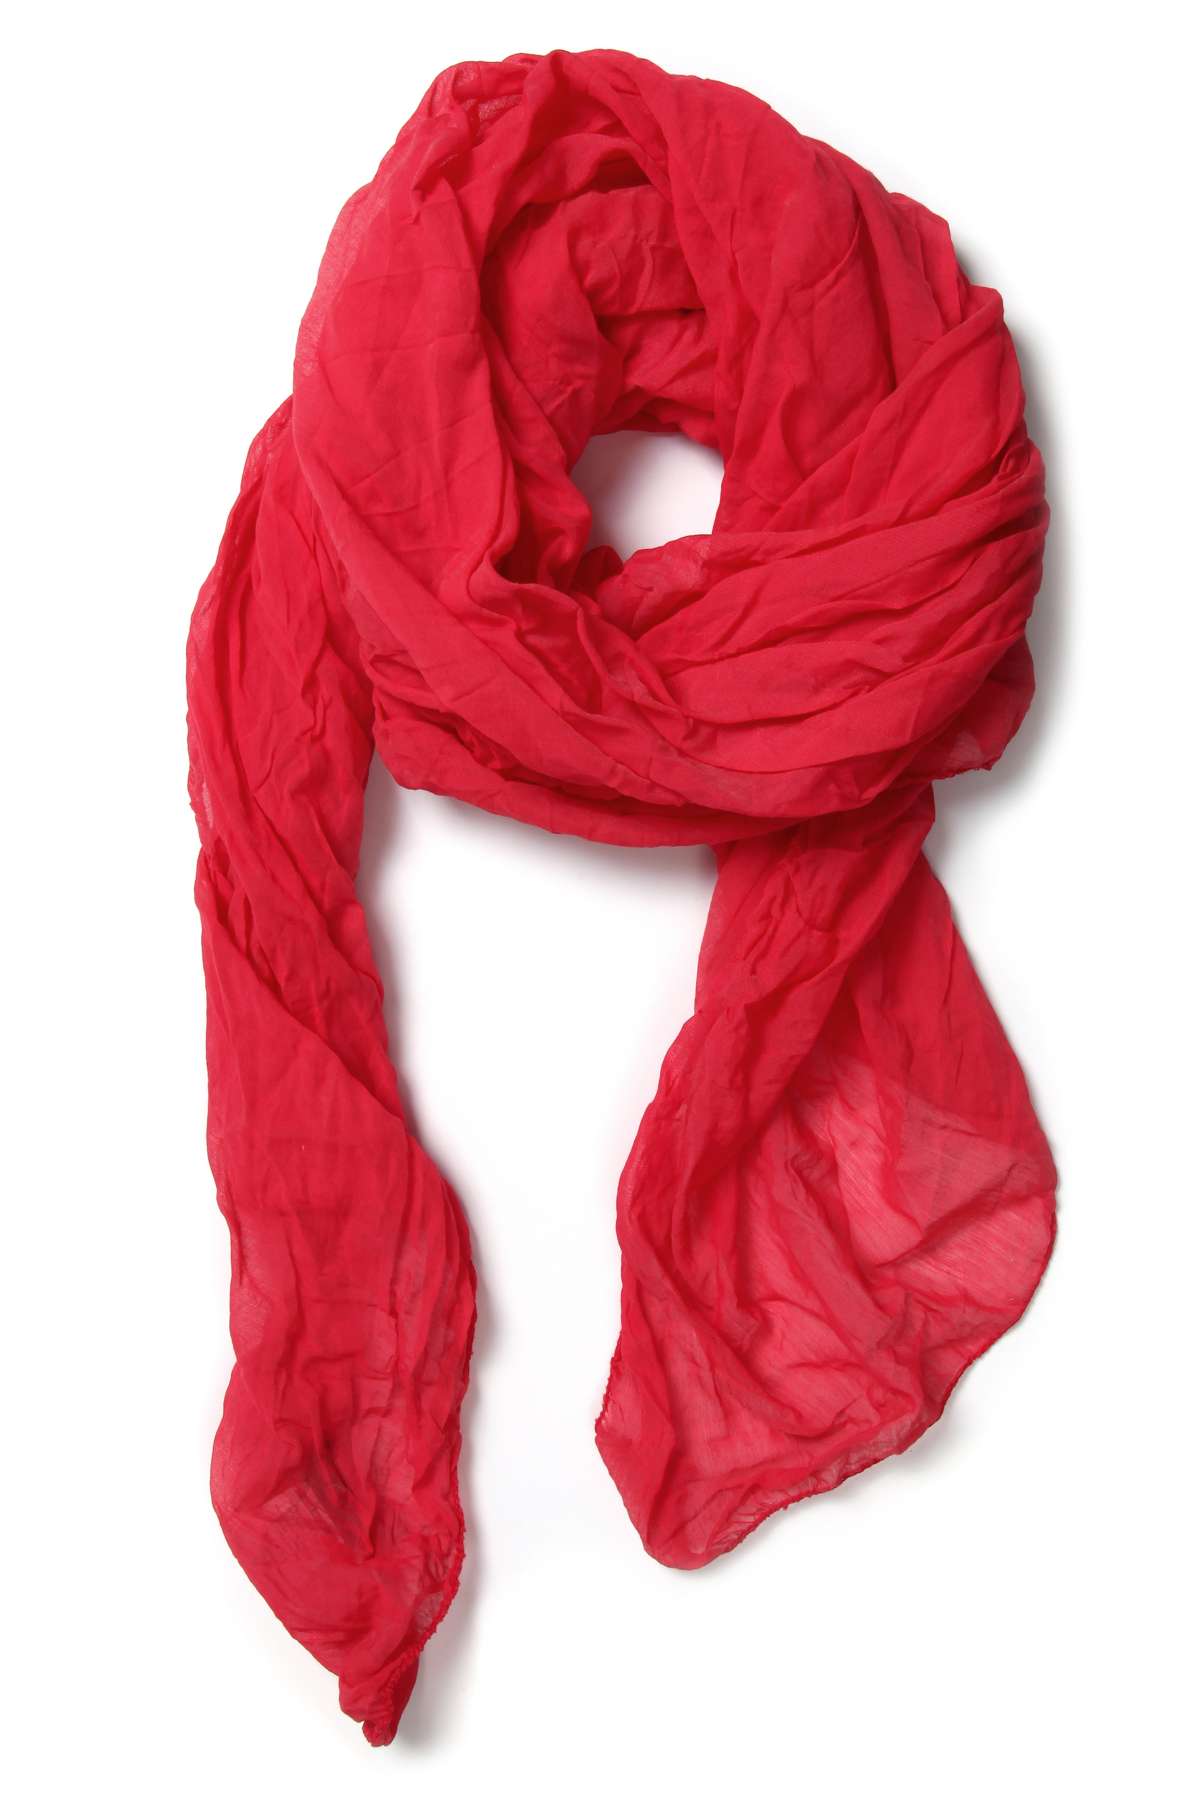 Модный шарф (1 штука), летний, легкий и свободный.